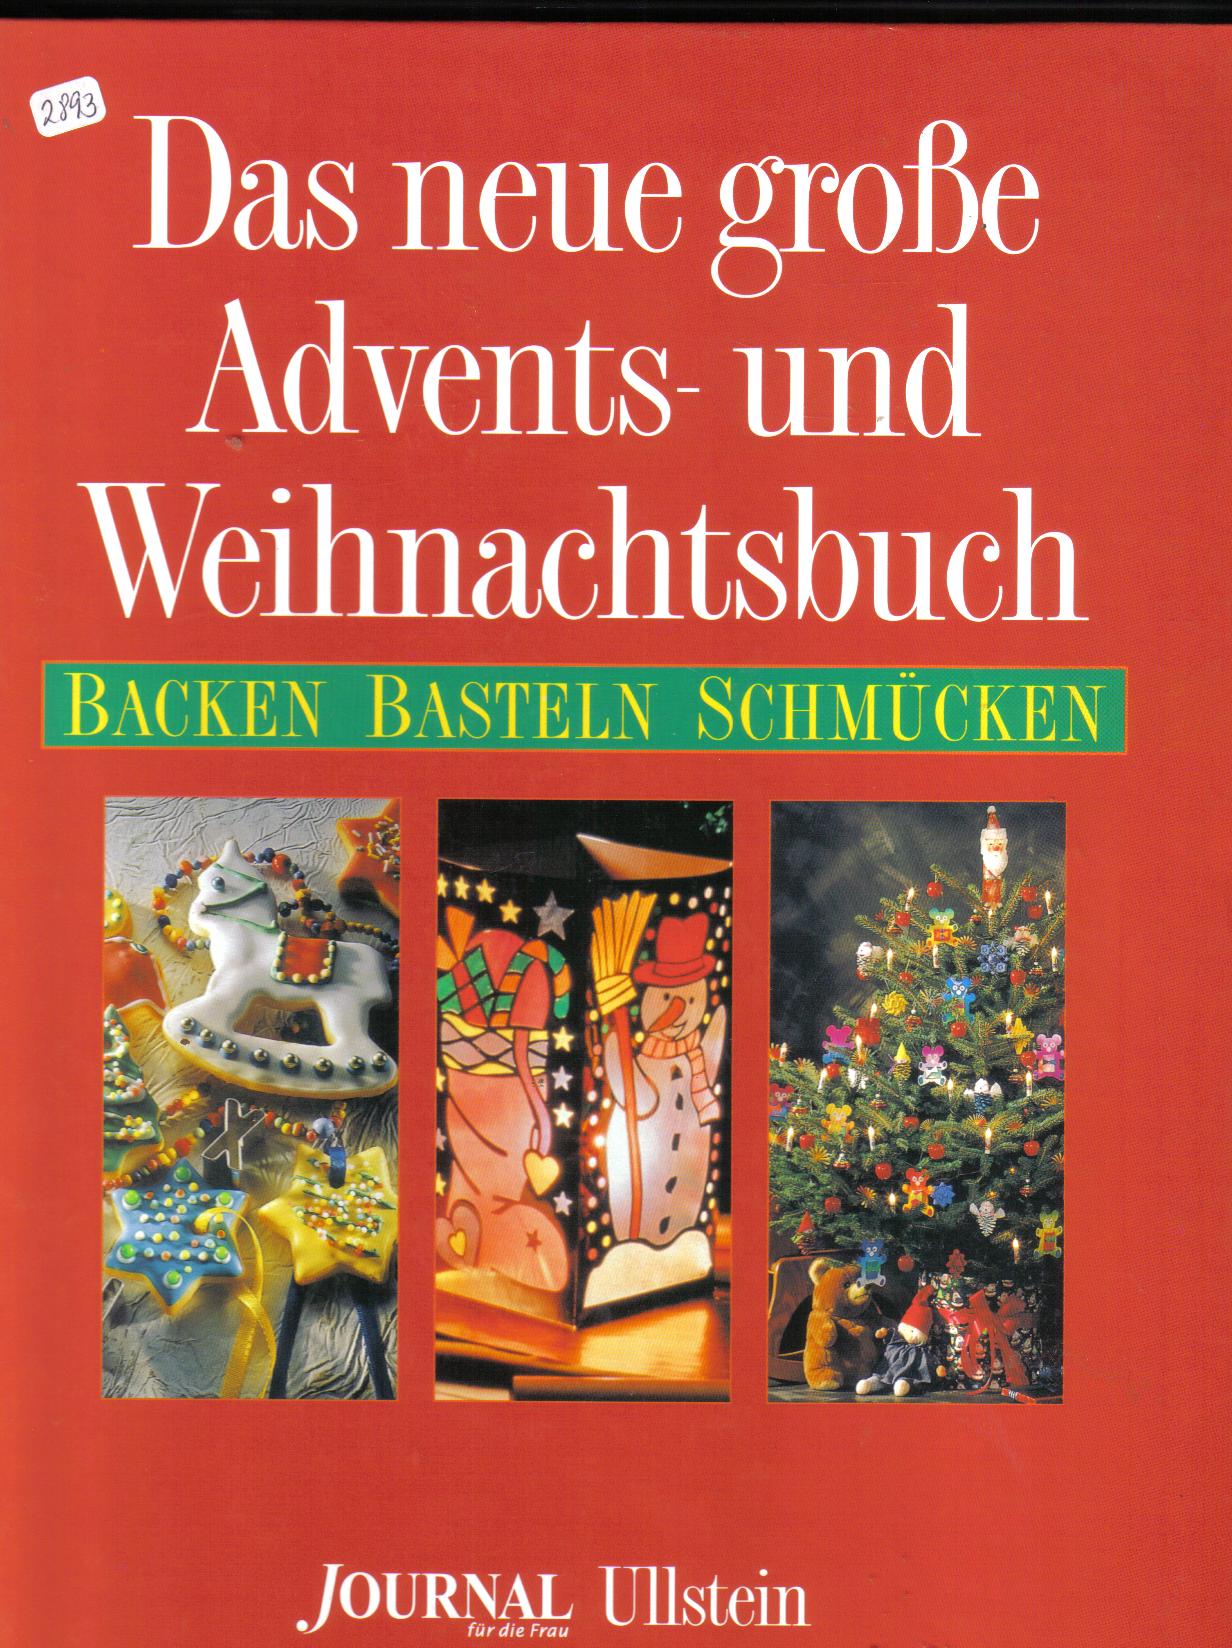 Das neue grosse Advents und Weihnachtsbuch( Journal fuer die Frau)